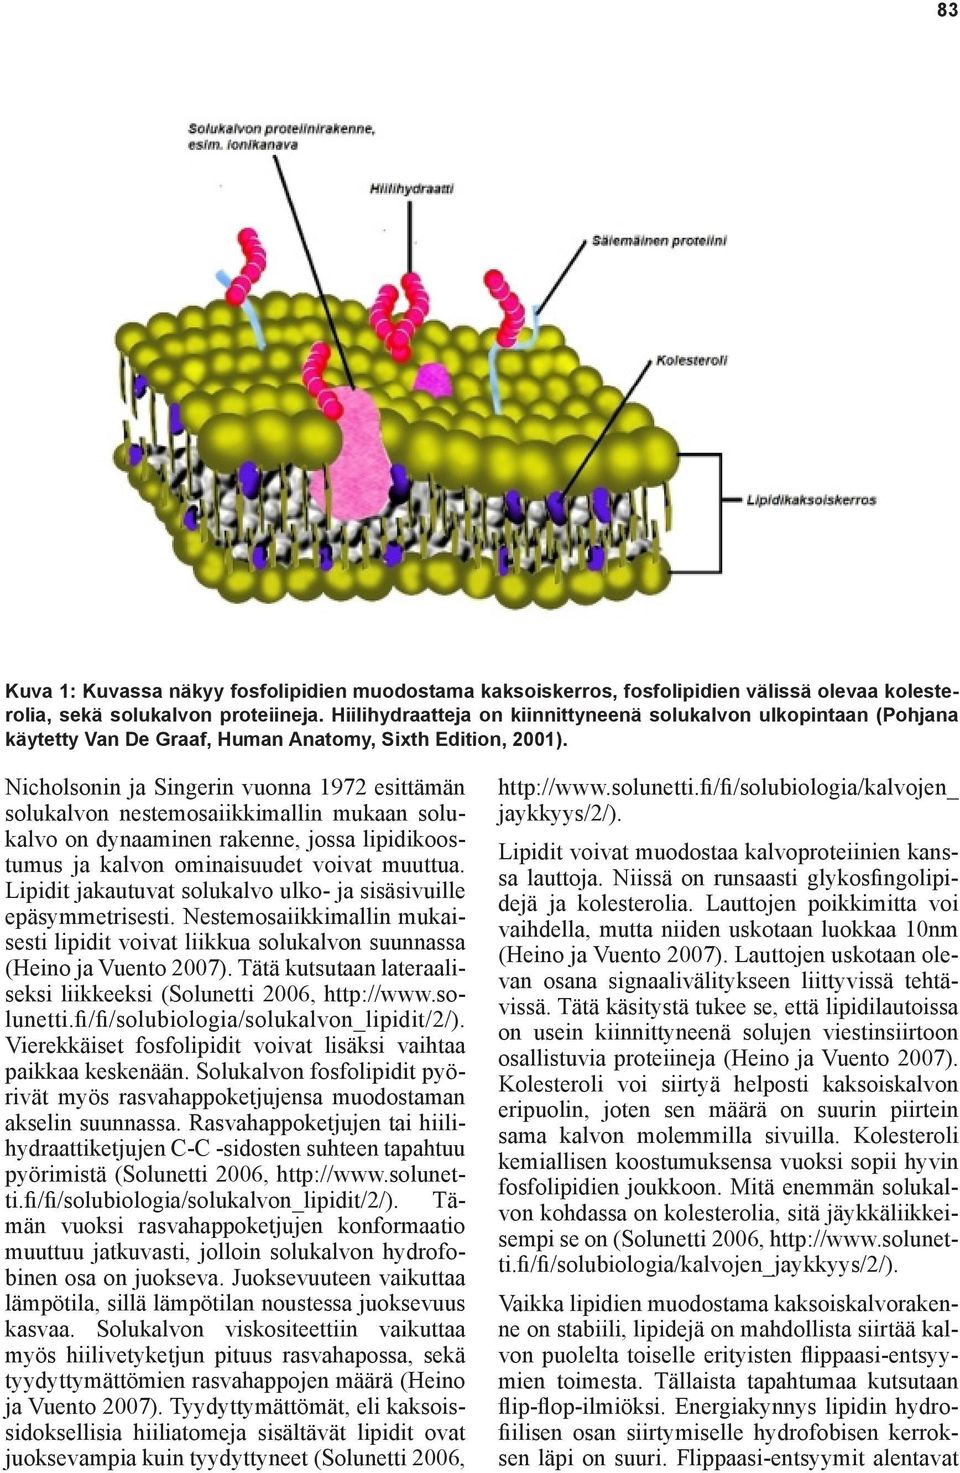 Nicholsonin ja Singerin vuonna 1972 esittämän solukalvon nestemosaiikkimallin mukaan solukalvo on dynaaminen rakenne, jossa lipidikoostumus ja kalvon ominaisuudet voivat muuttua.